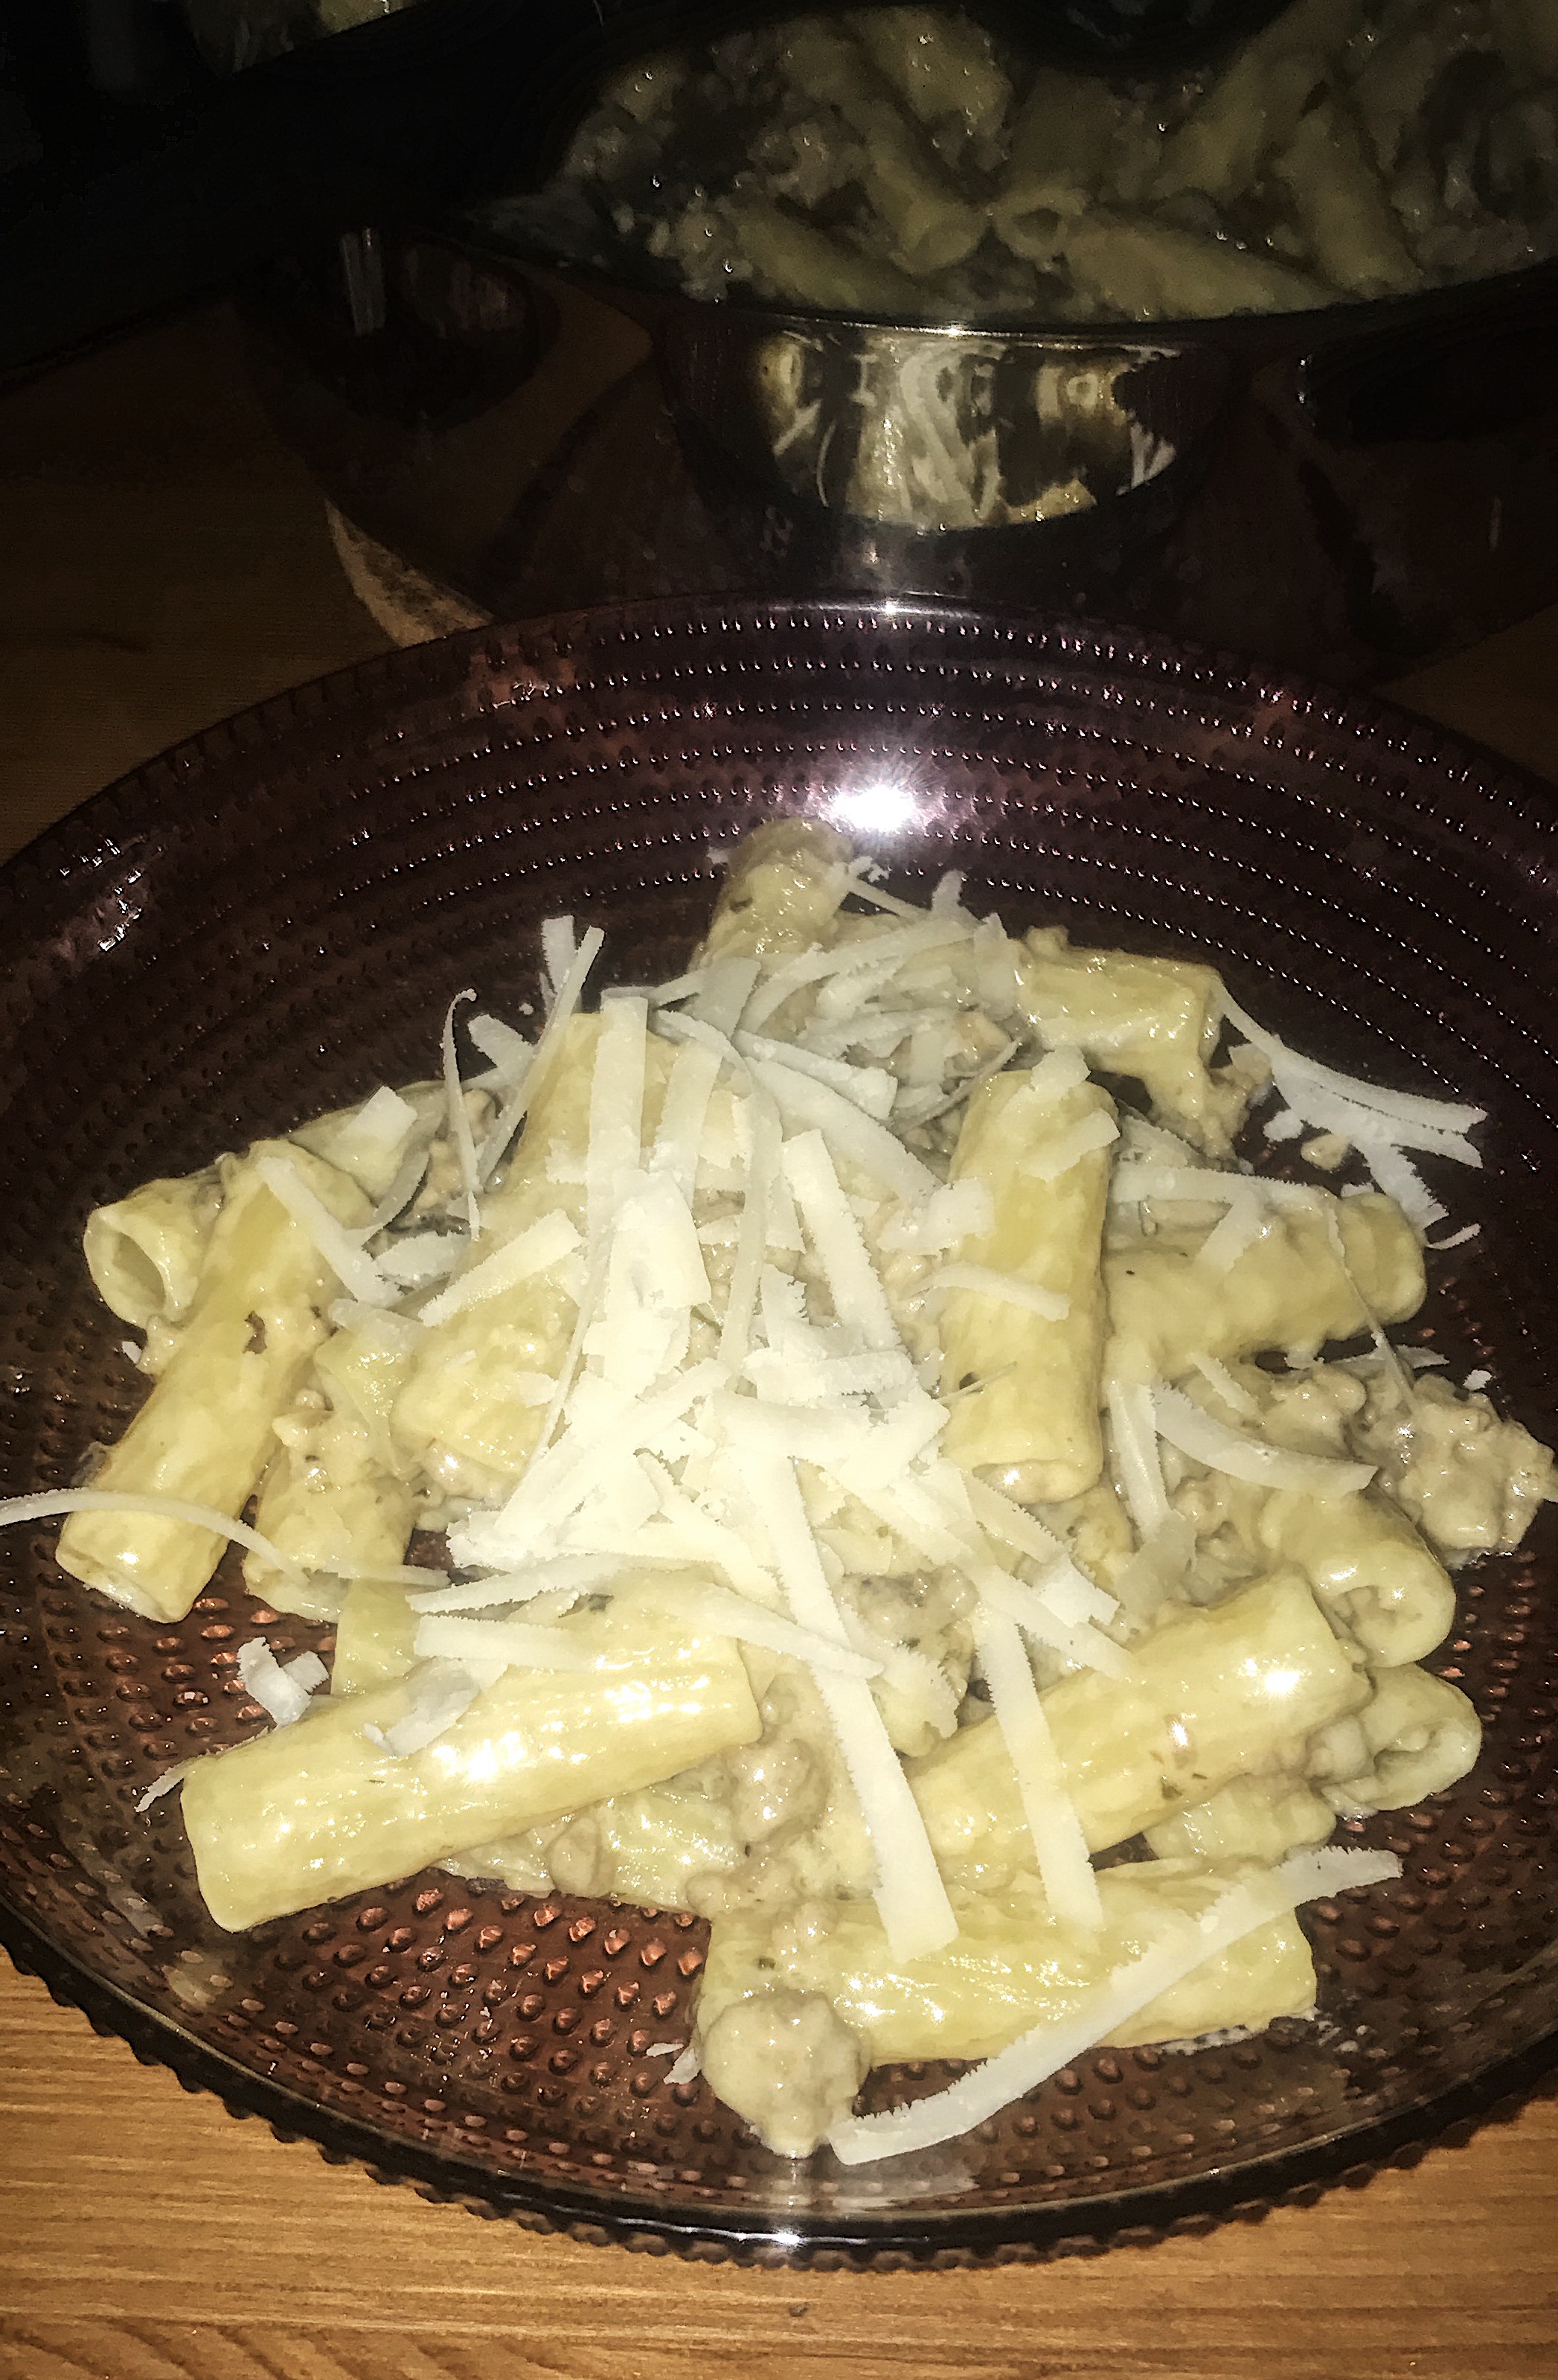 “Italian sausage” pasta